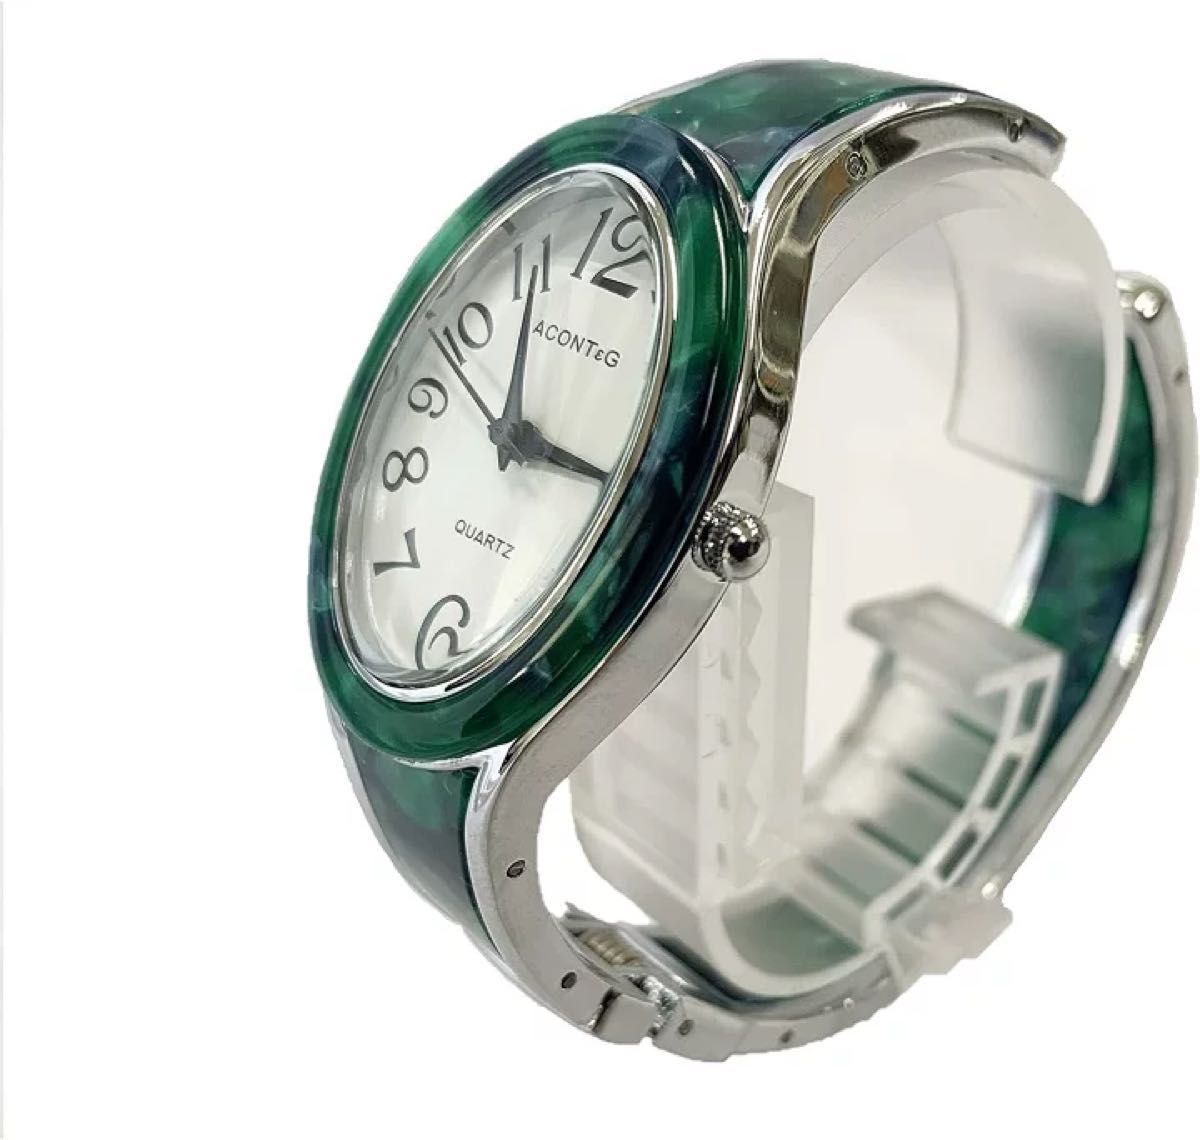 ACONT&G マーブル柄が落ち着いた雰囲気のレディース腕時計 細身シンプルファッションウオッチ 日本製ムーブメント 腕時計